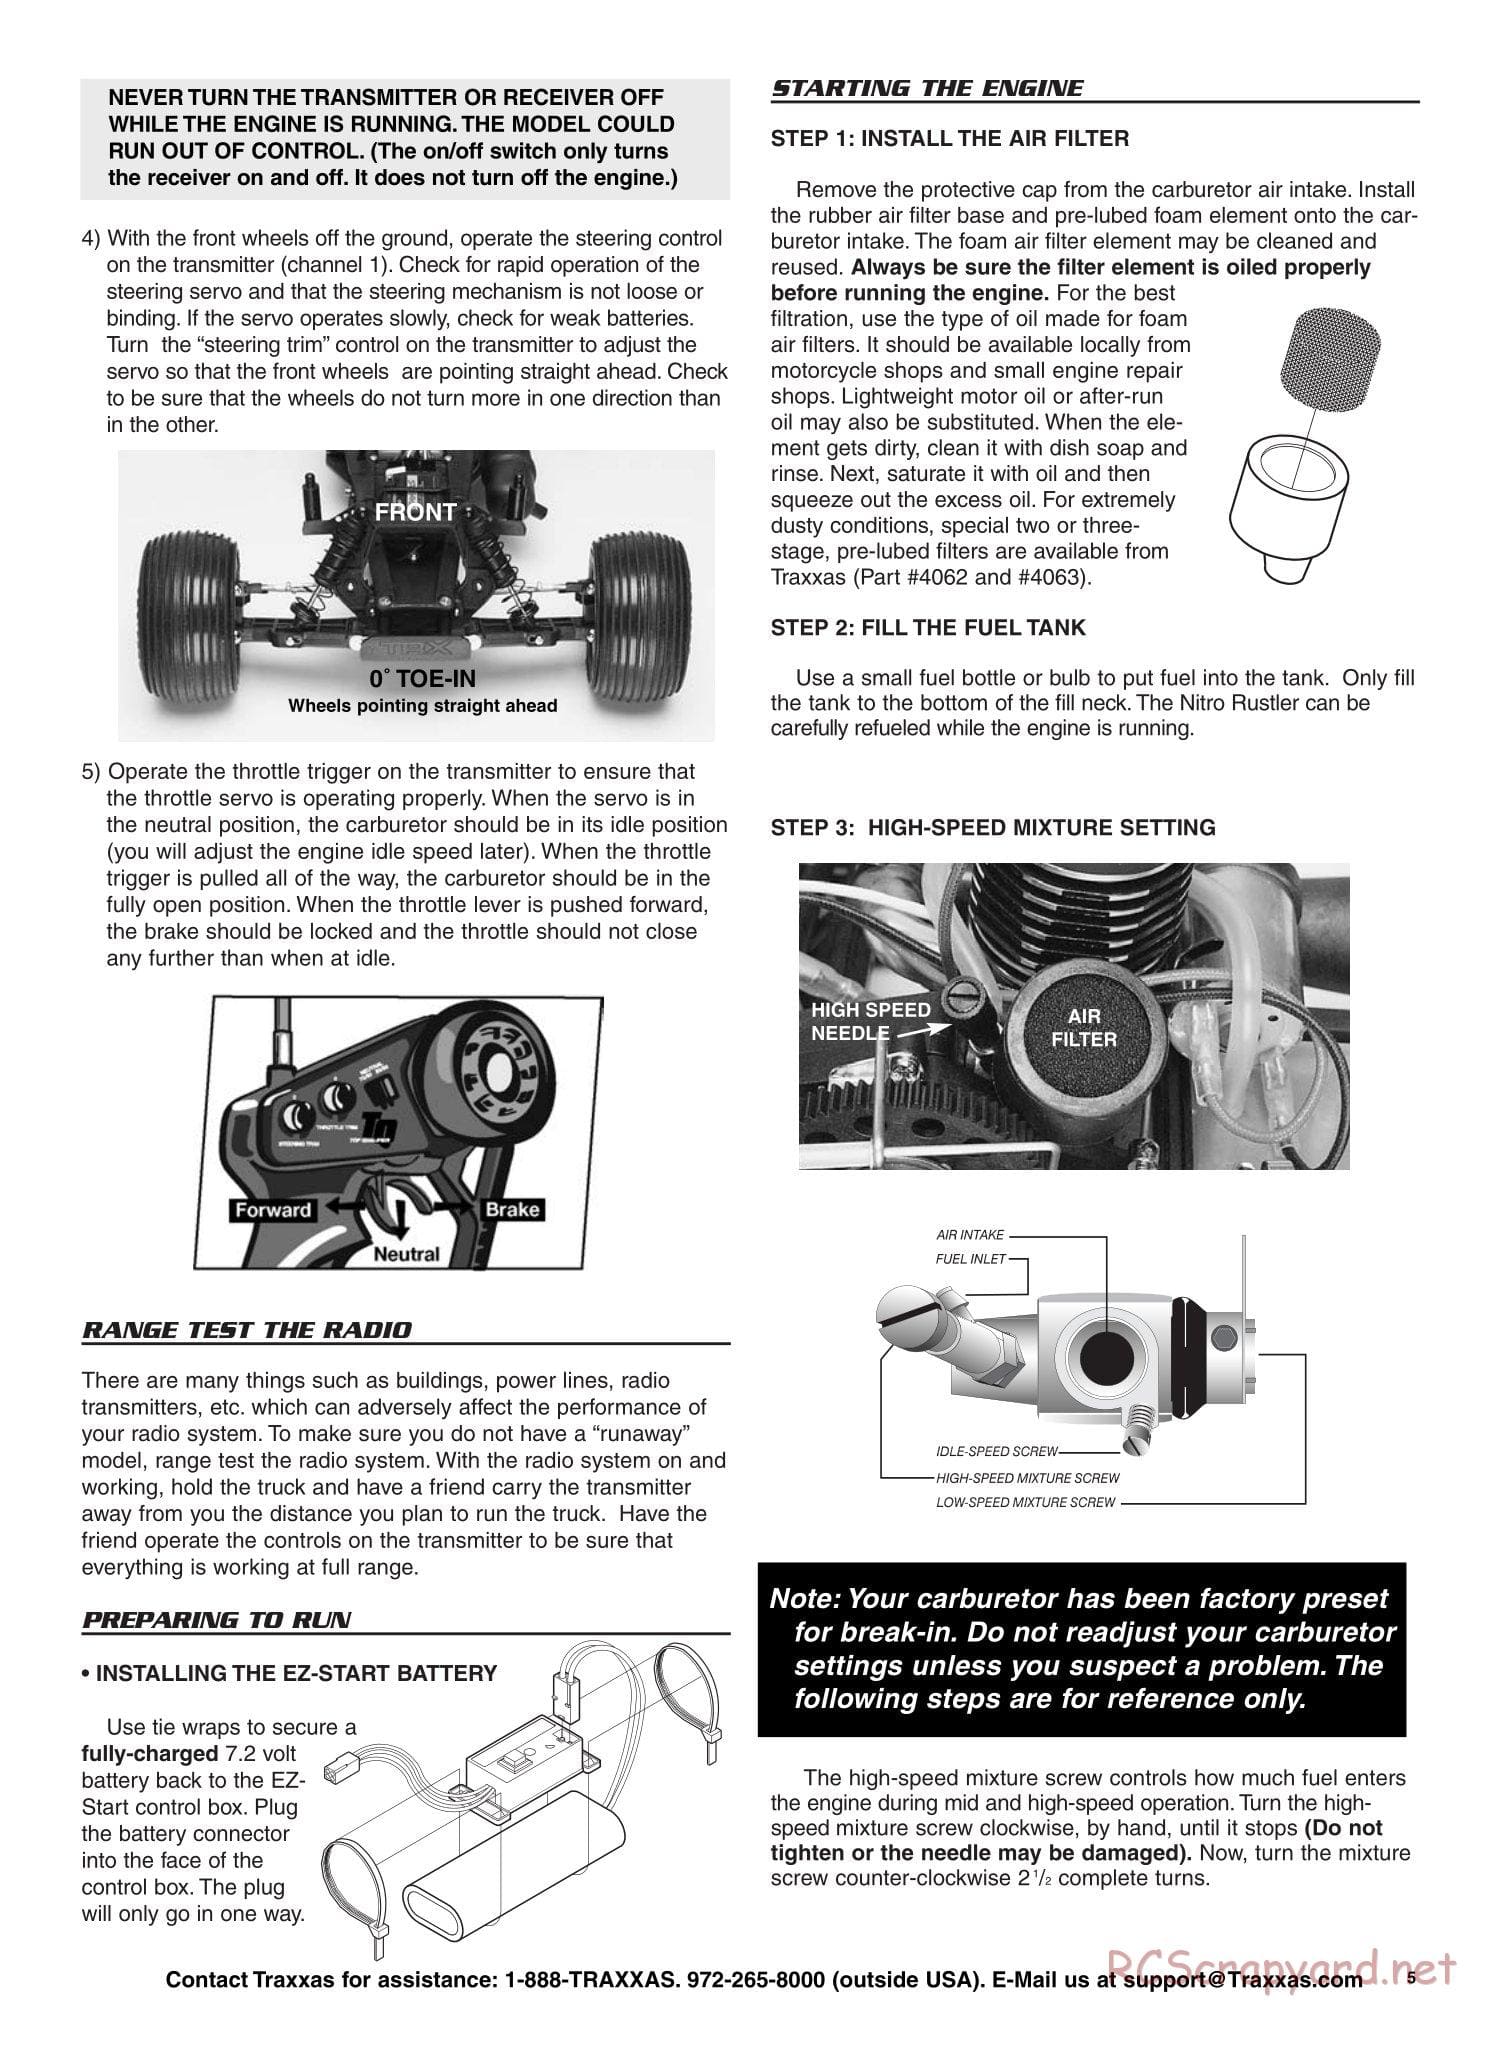 Traxxas - Nitro Rustler - Manual - Page 5